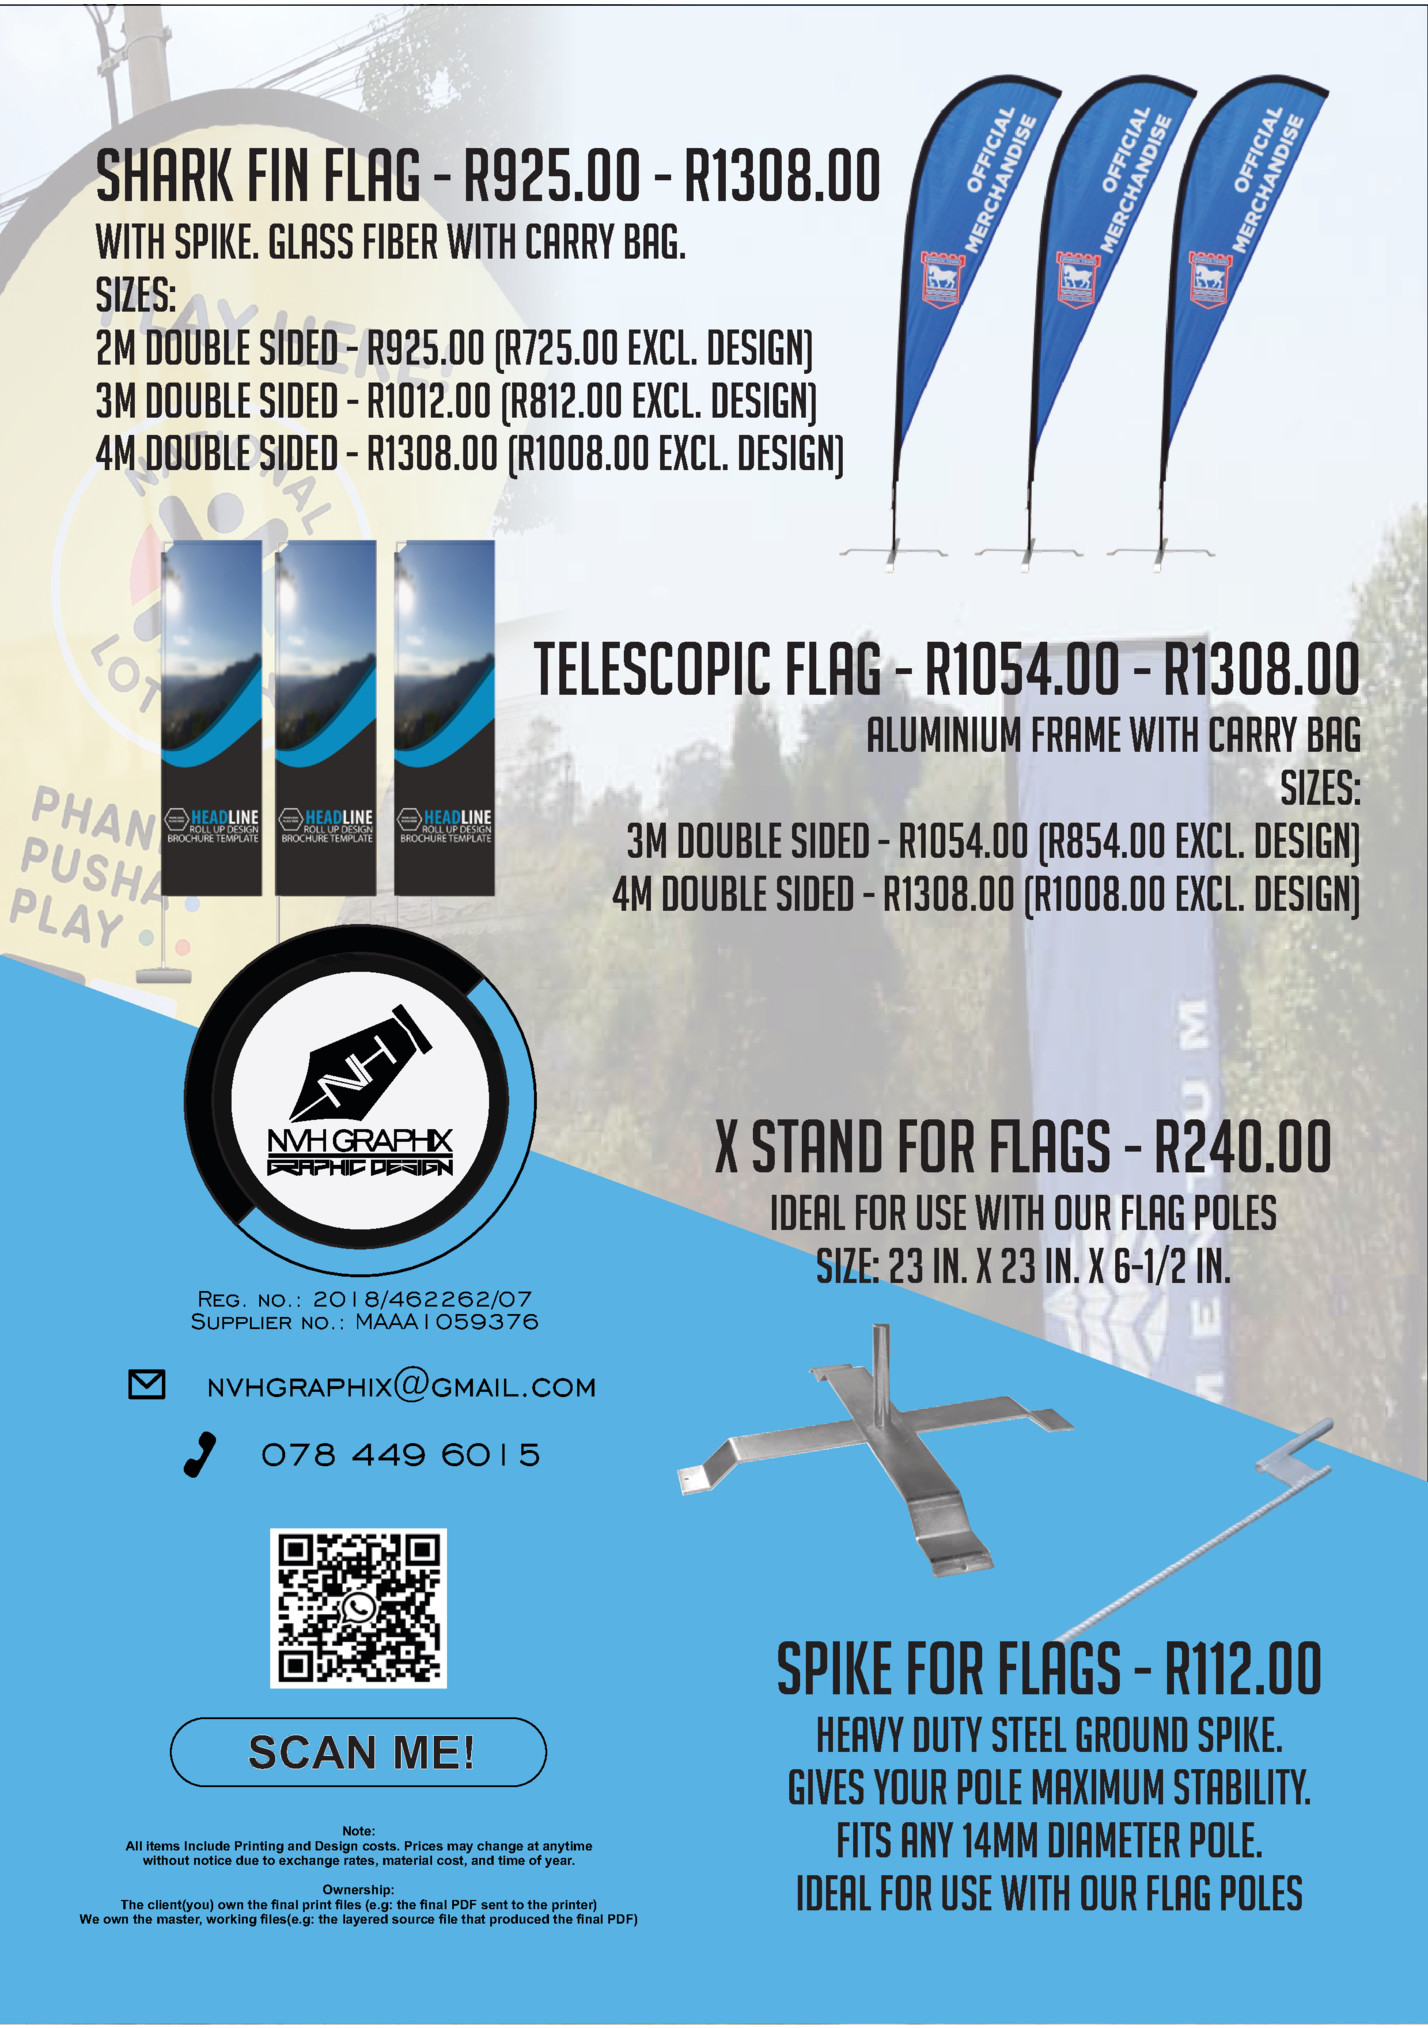 Shark Fin Flag - R925.00 - R1308.00